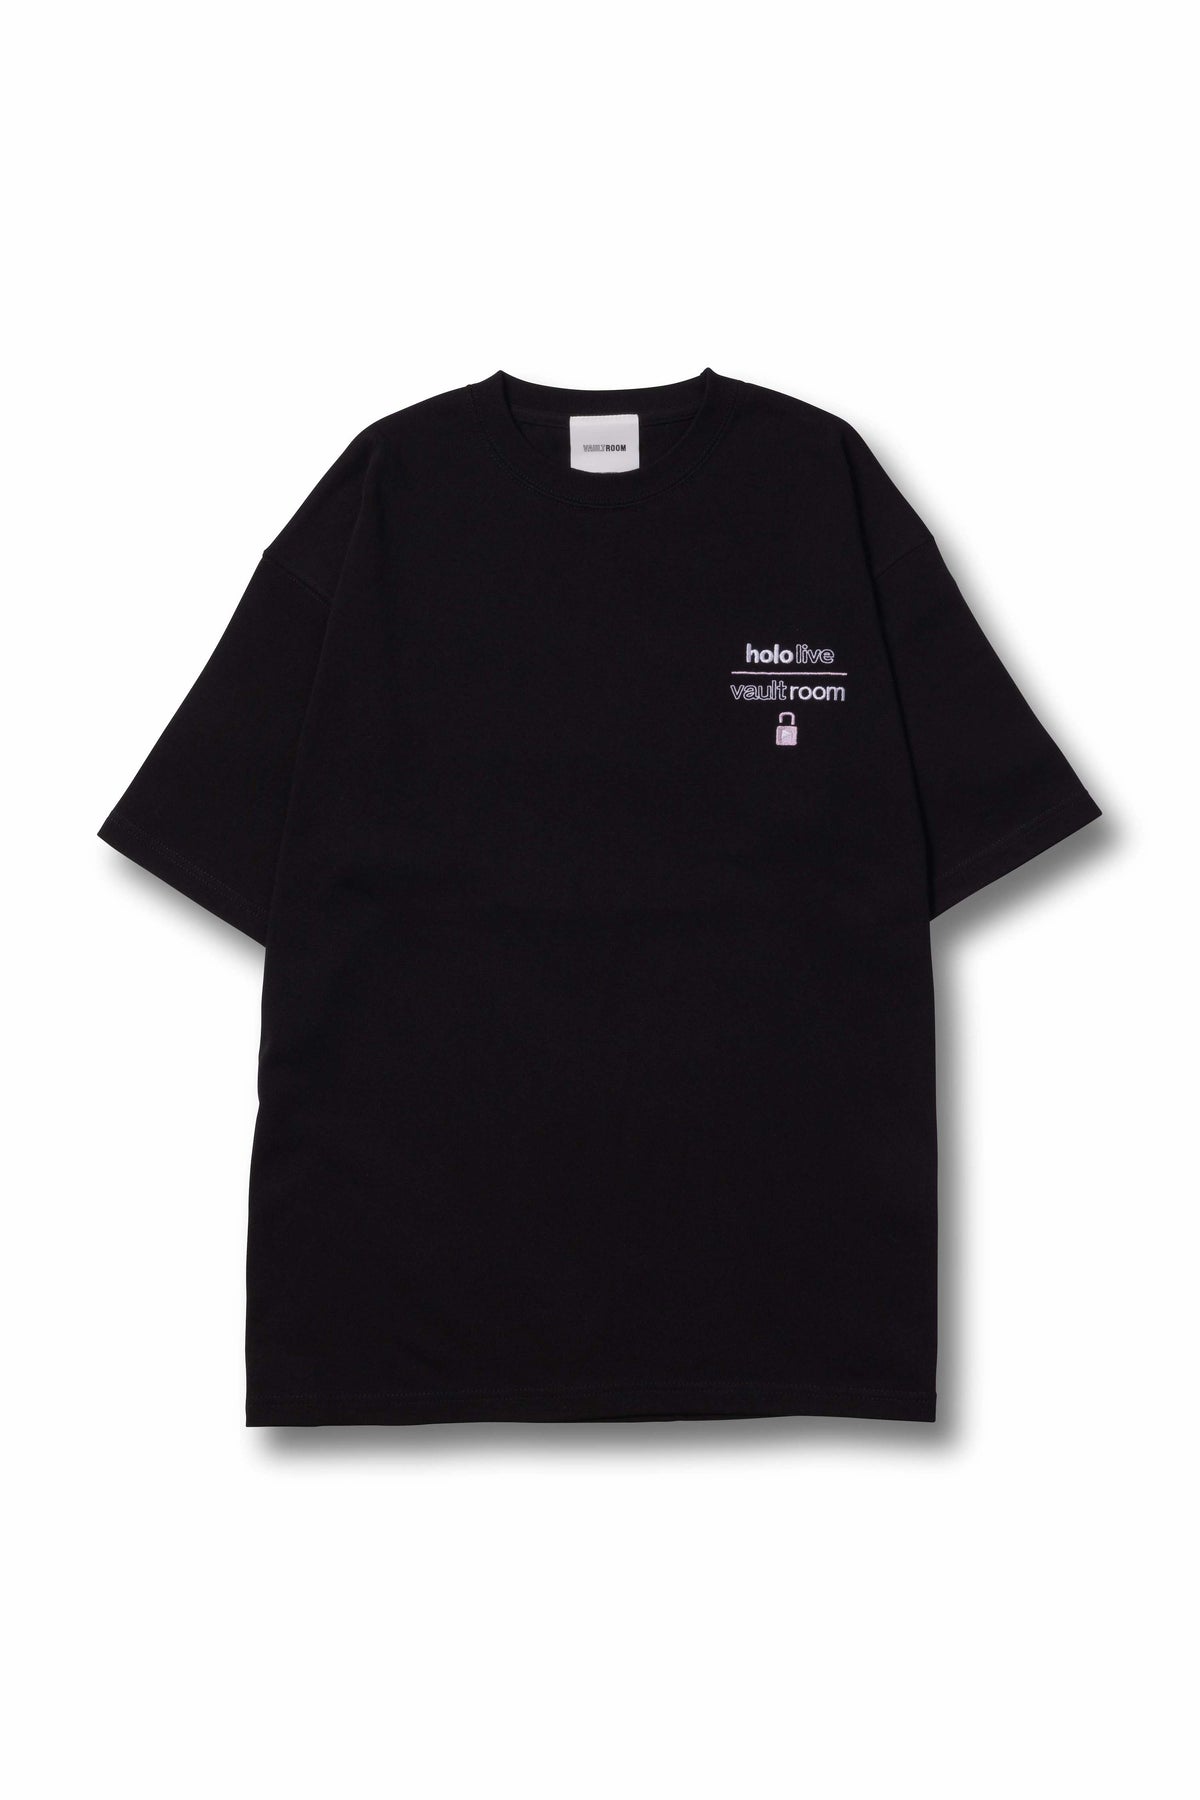 安心の国産製品 vaultroom MINATO AQUA TEE BLK Tシャツ/カットソー